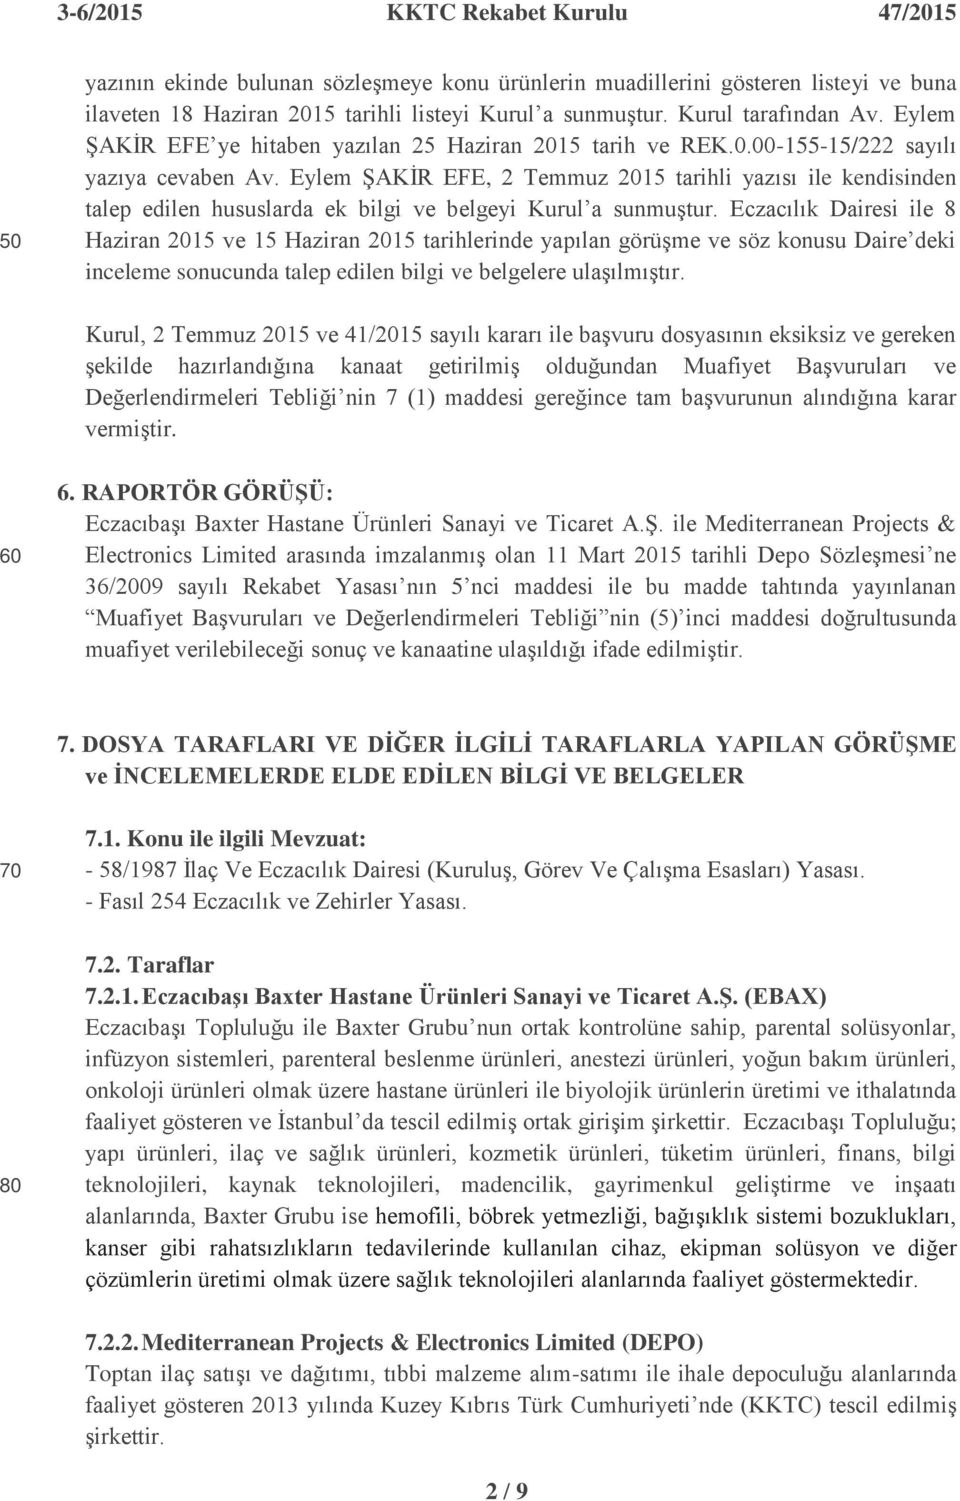 Eylem ġakġr EFE, 2 Temmuz 2015 tarihli yazısı ile kendisinden talep edilen hususlarda ek bilgi ve belgeyi Kurul a sunmuģtur.